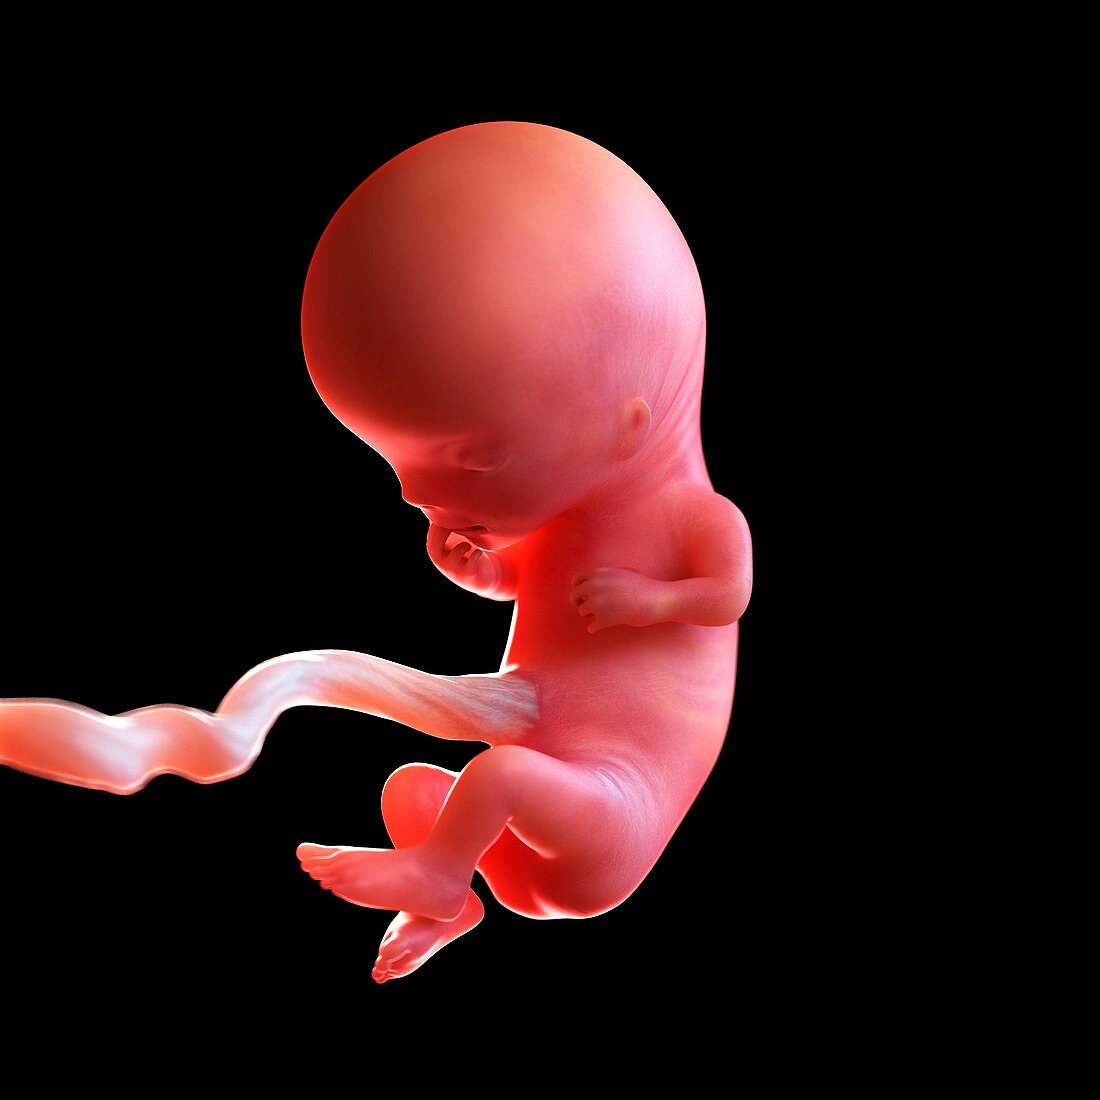 Human foetus age 11 weeks, illustration